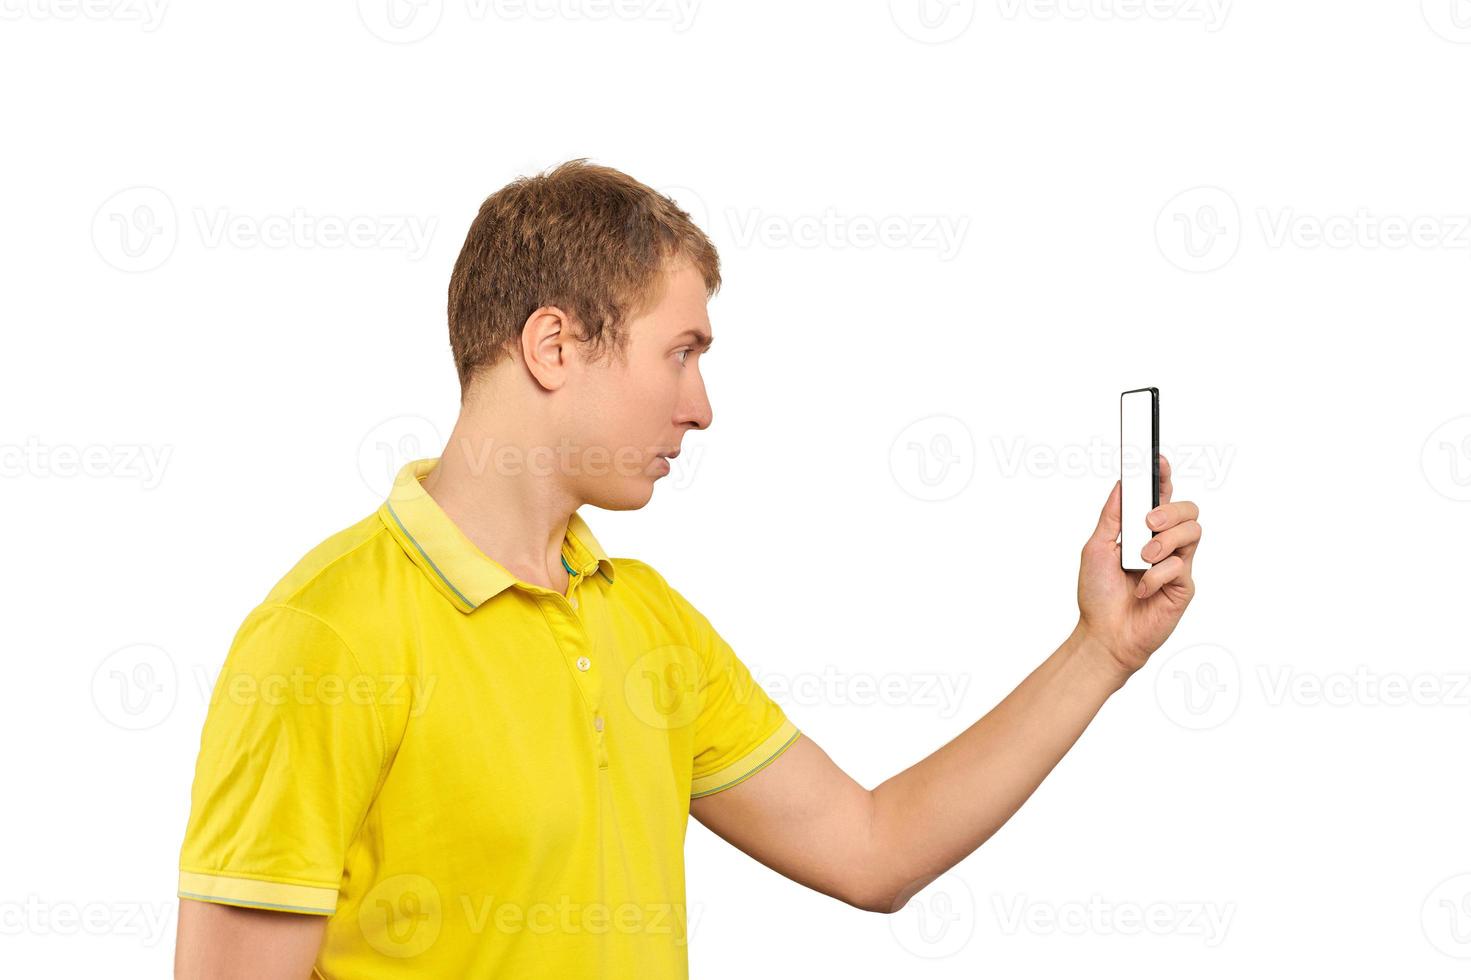 mec drôle en t-shirt jaune prenant des photos à l'aide d'un smartphone, mec avec téléphone portable, maquette blanche